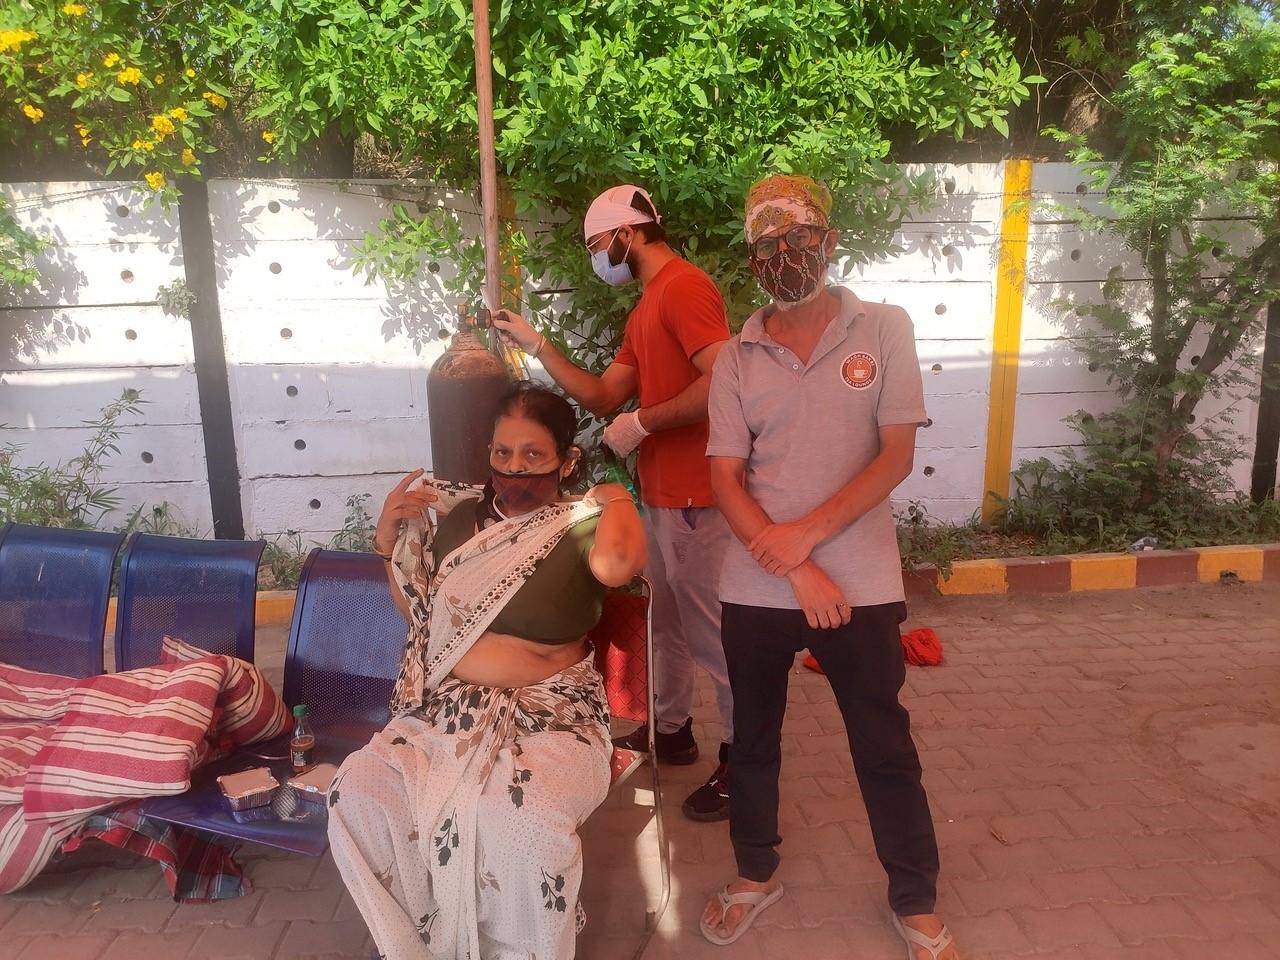 Nisha Murthy, malade du COVID-19, est venue au temple sikh de Nizamuddin de New Delhi, pour respirer de l’oxygène offerte par une association. [RTS - Sébastien farcis]